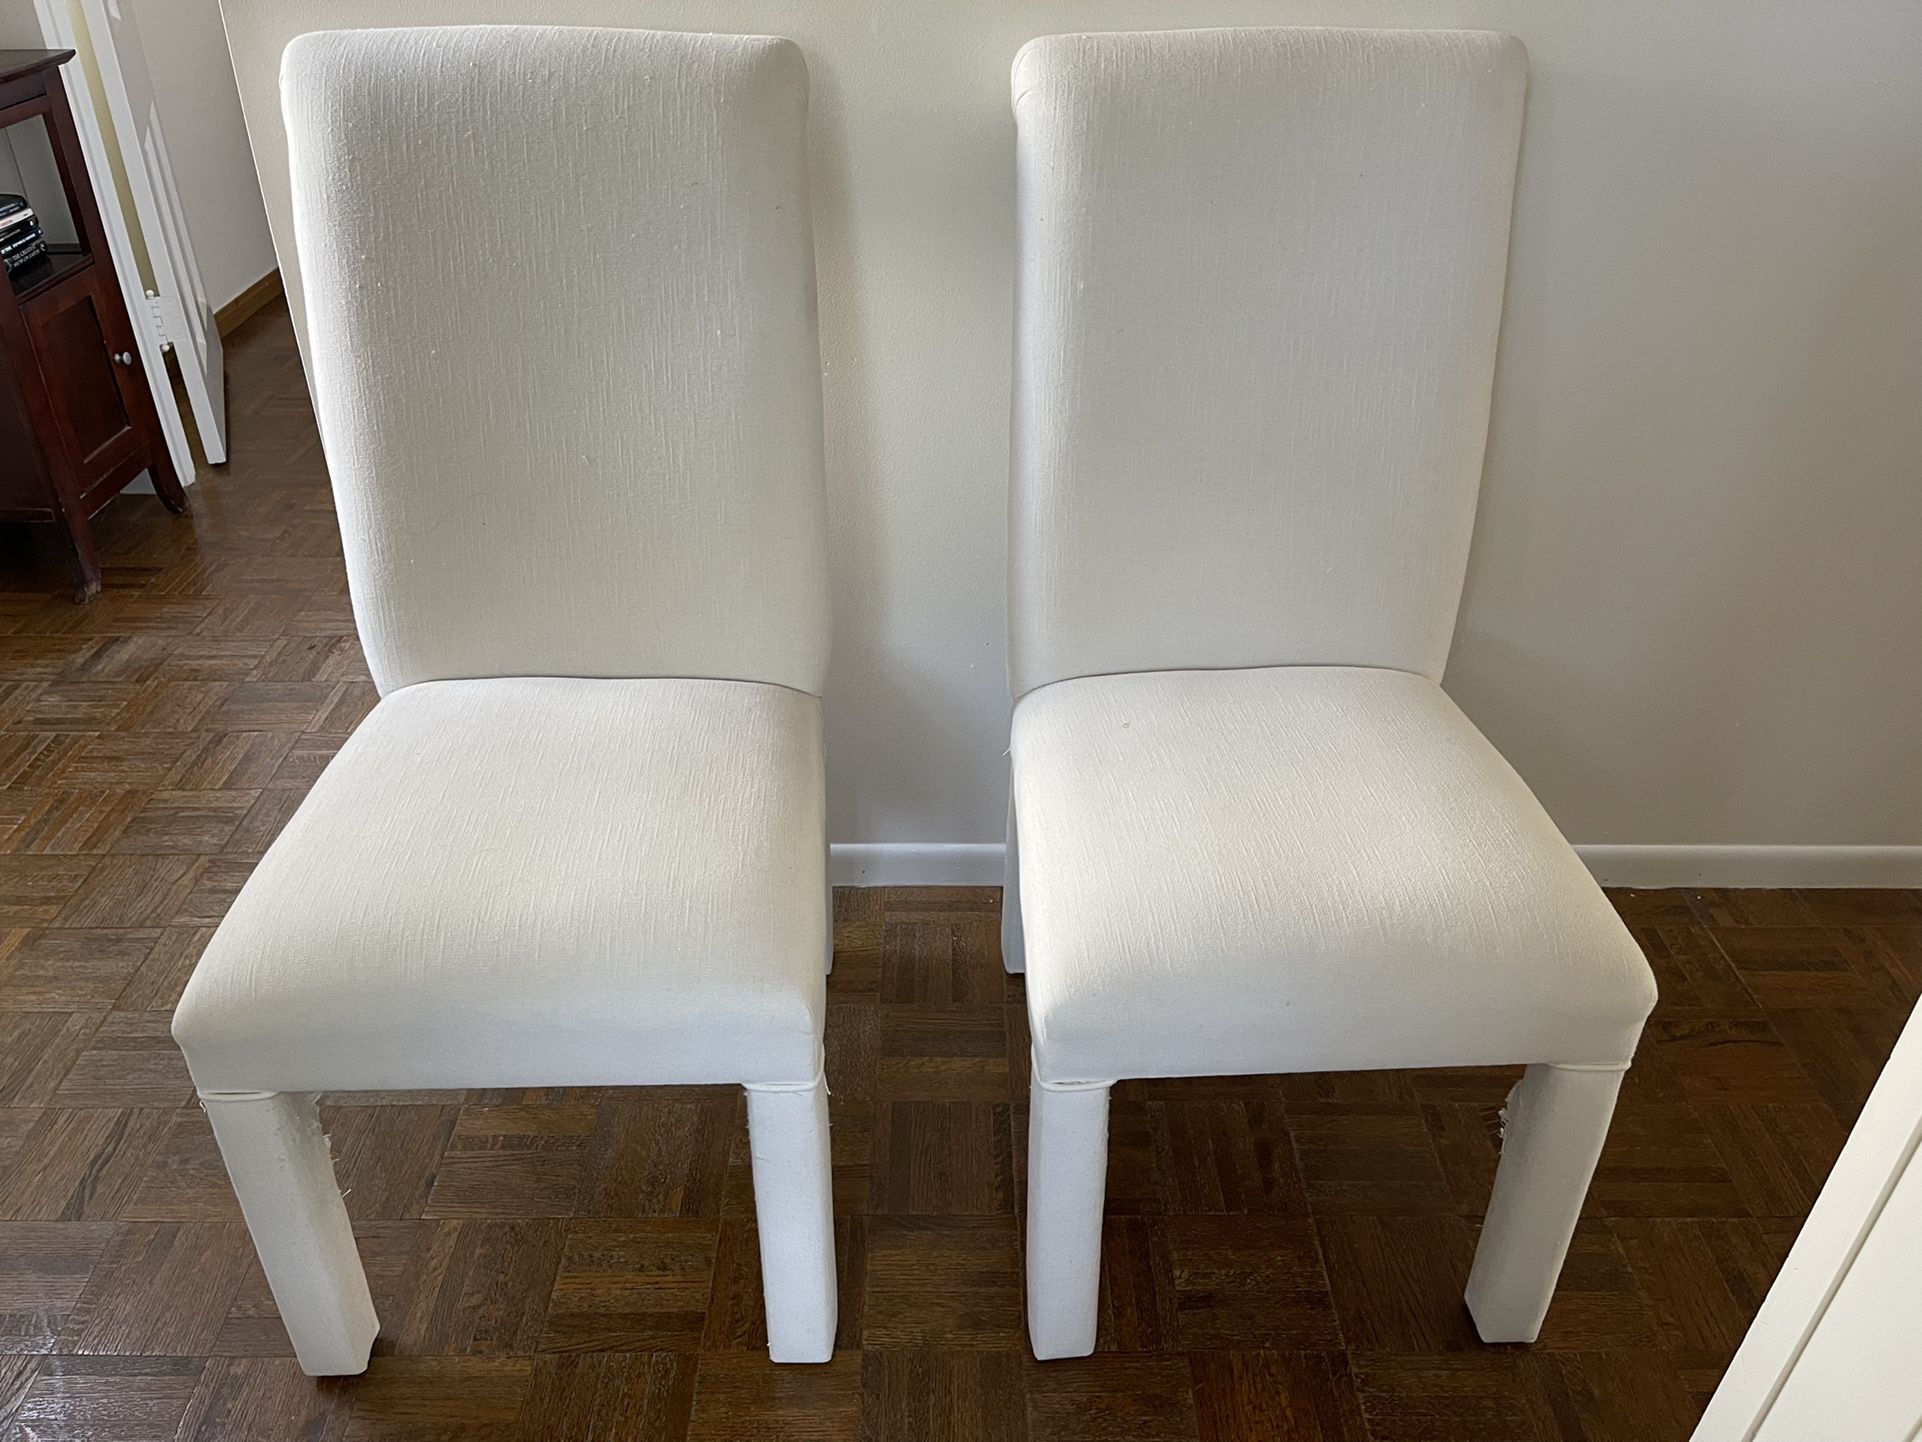 White Chairs $5